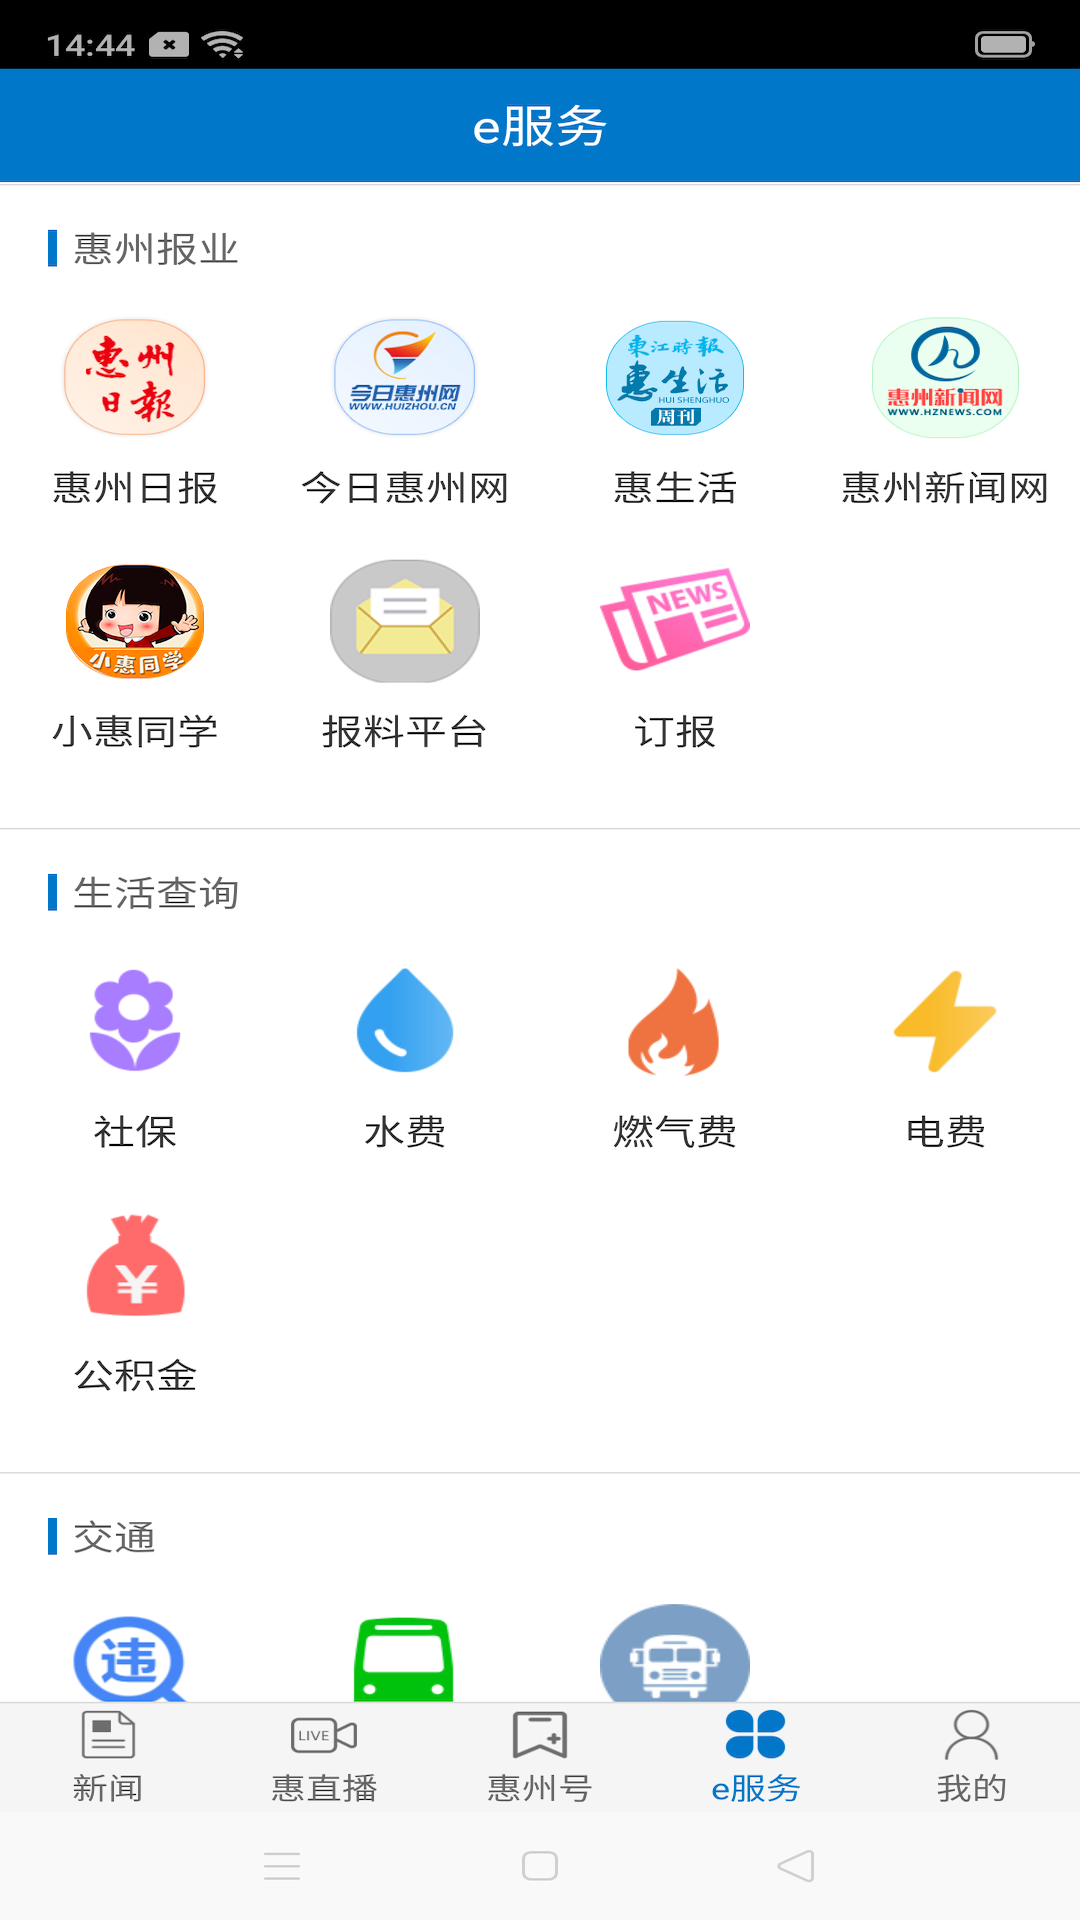 惠州头条app下载 第1张图片